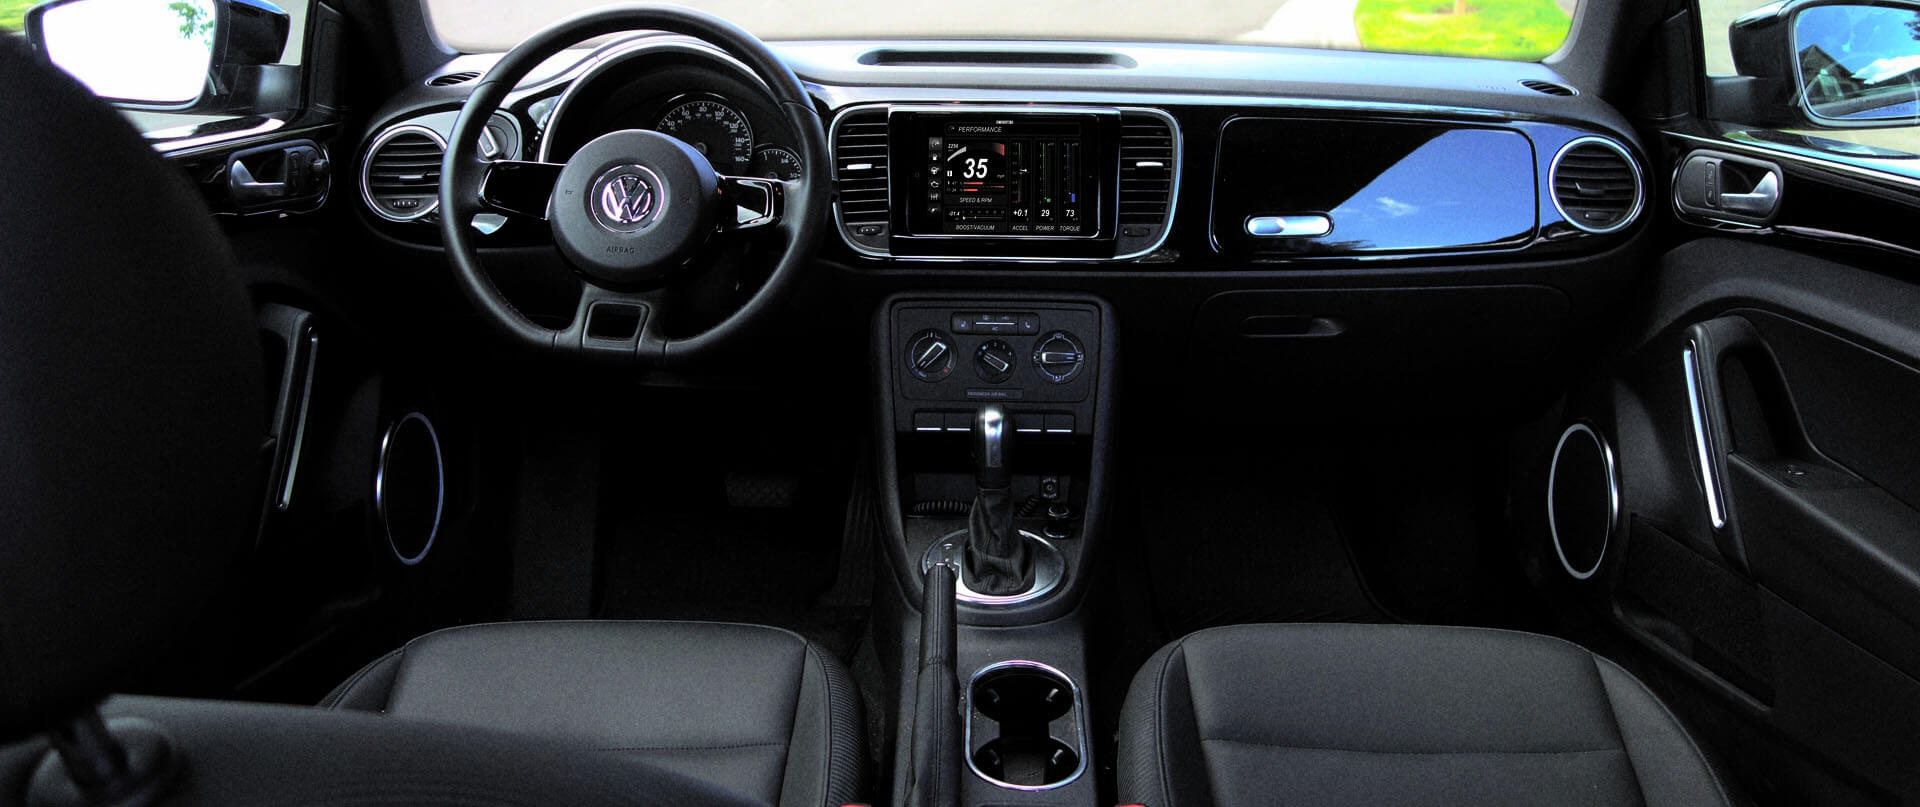 Volkswagen Jetta dash kit